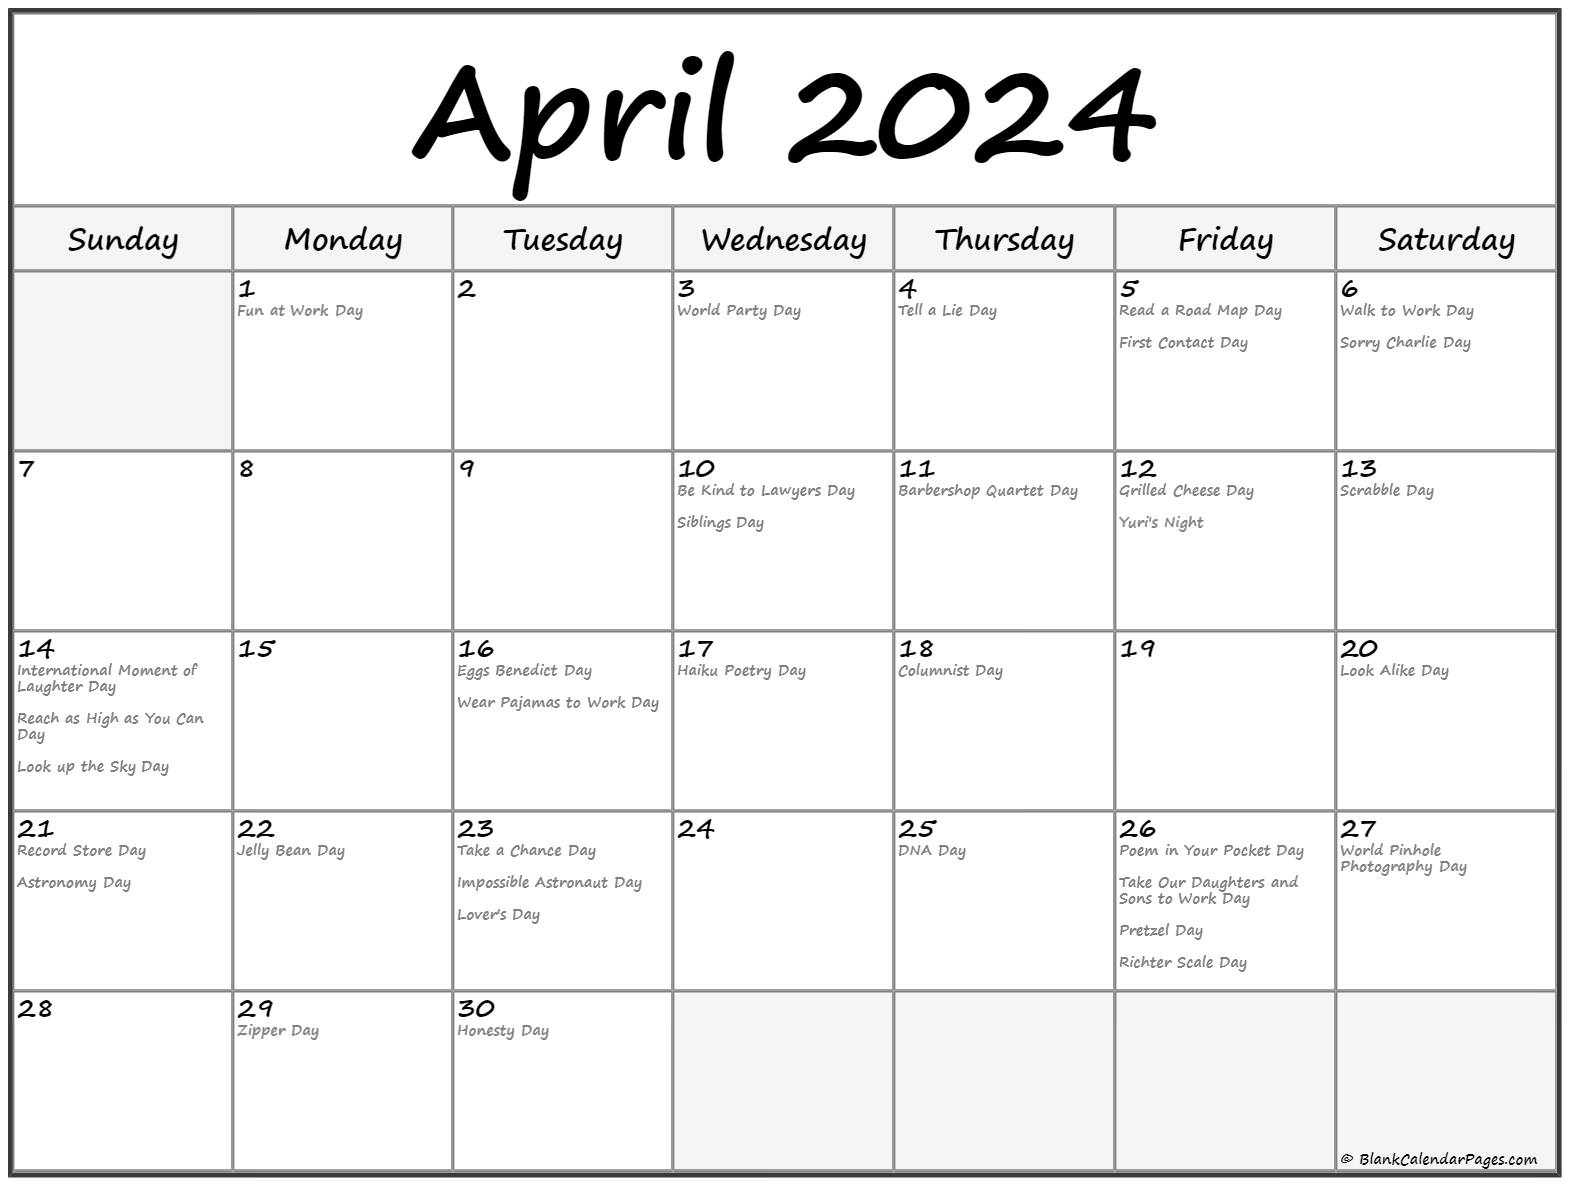 April 2024 With Holidays Calendar regarding April 2024 Calendar Events